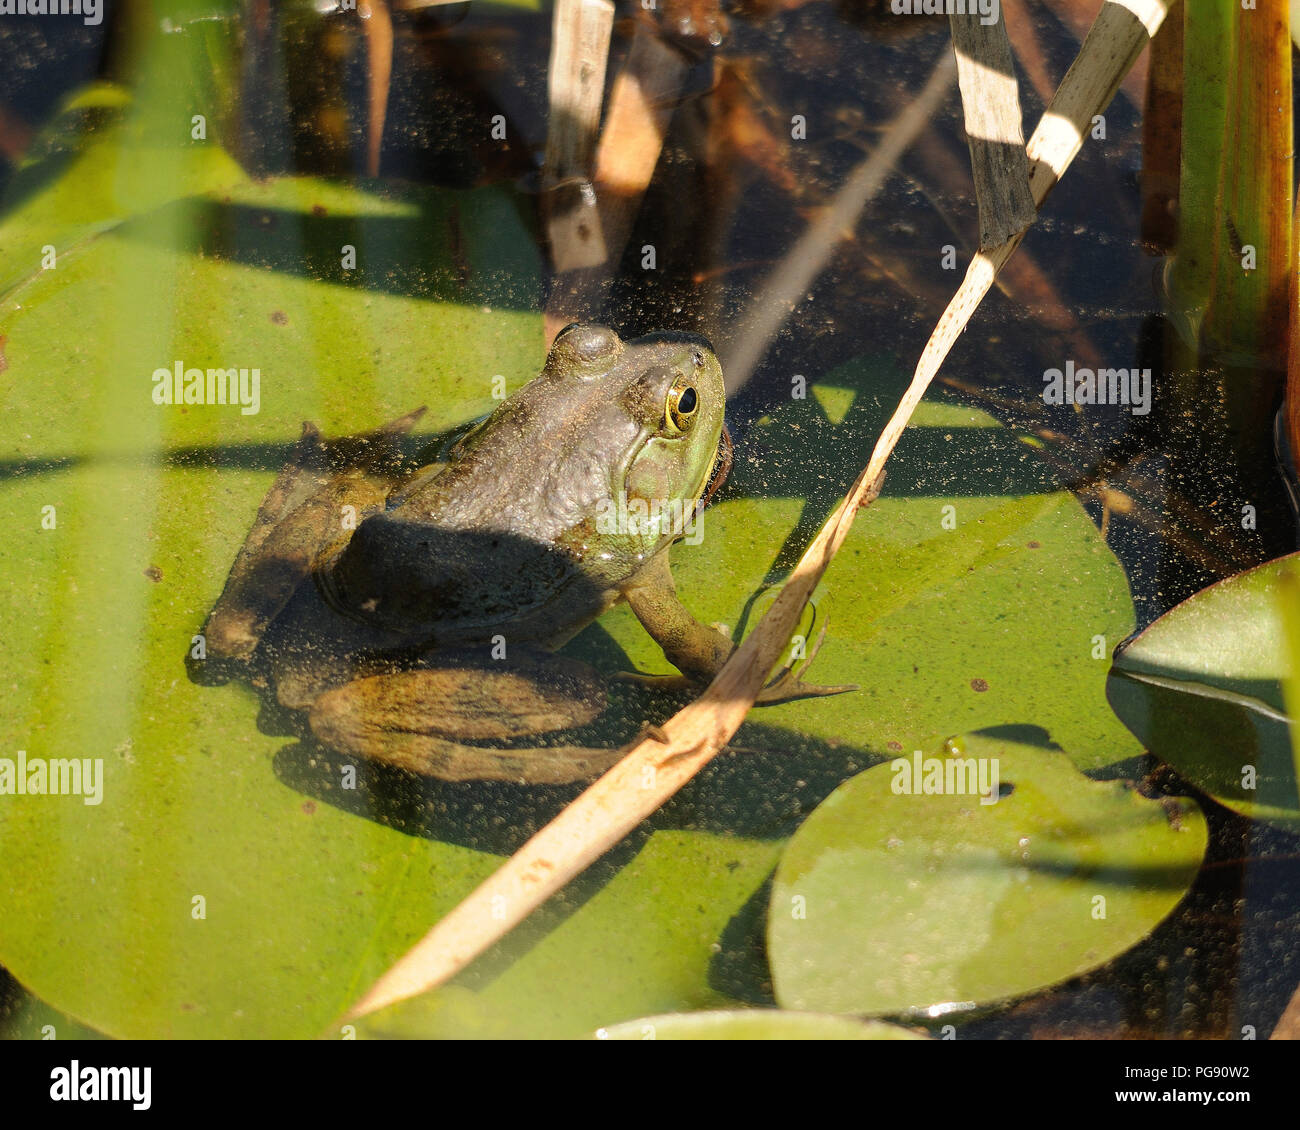 Frosch sitzend auf einem Baumstamm im Wasser ausgesetzt sein Körper, Kopf, Beine, Augen und in seiner Umwelt und Umgebung. Bild. Foto. Bild. Porträt. Bild Stockfoto